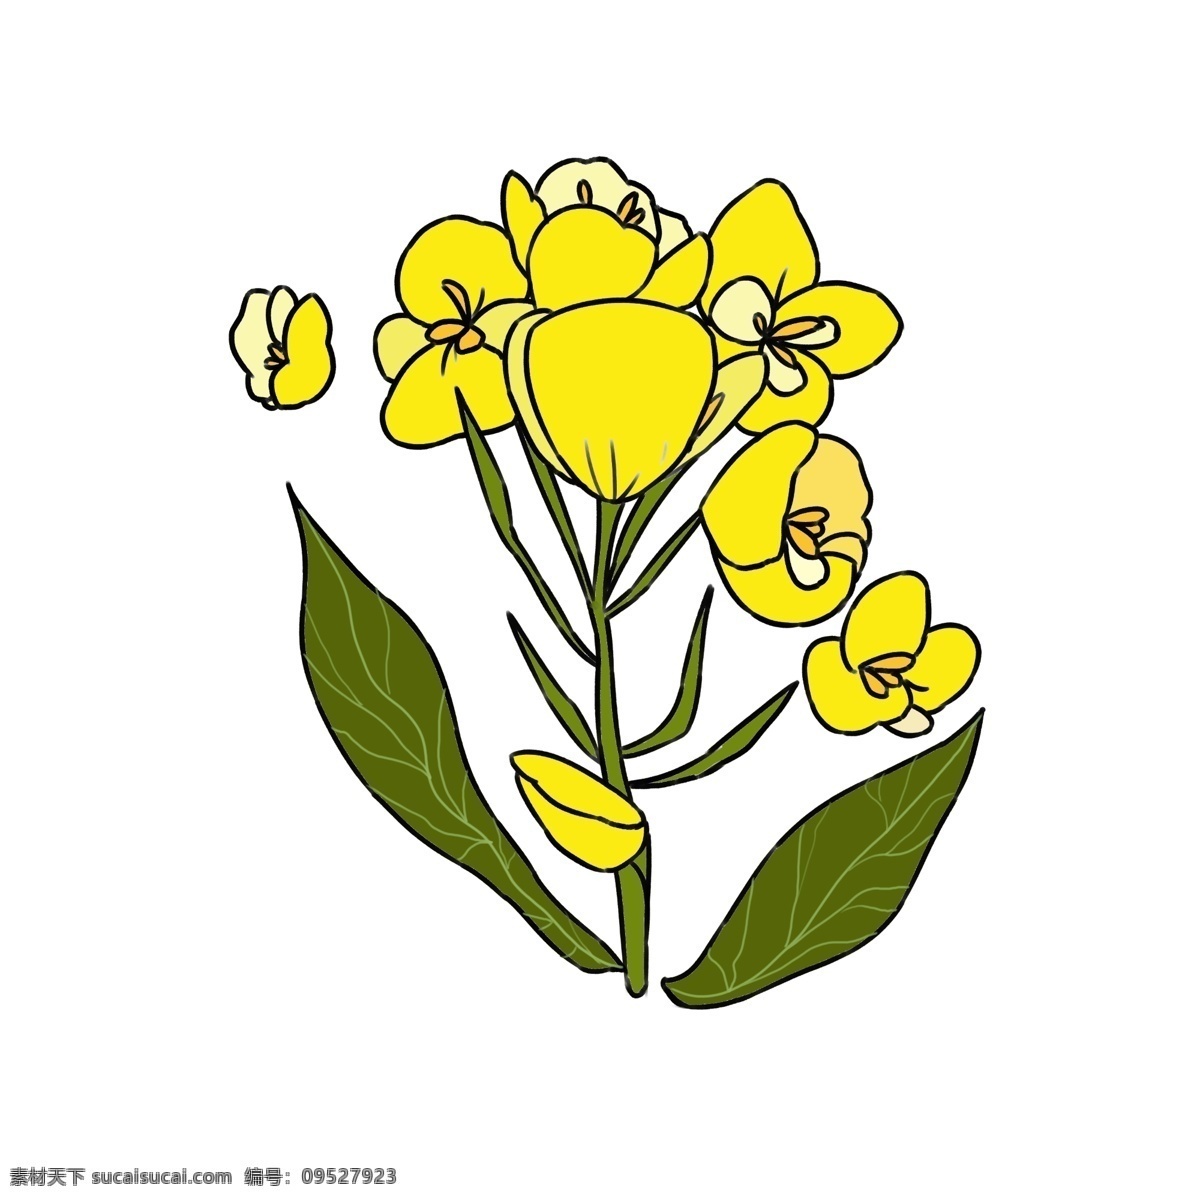 黄色 花朵 花瓣 飘落 唯美鲜花 油菜花插画 黄色花朵插画 绿色叶子 绽放花 花瓣飘落 新鲜花朵